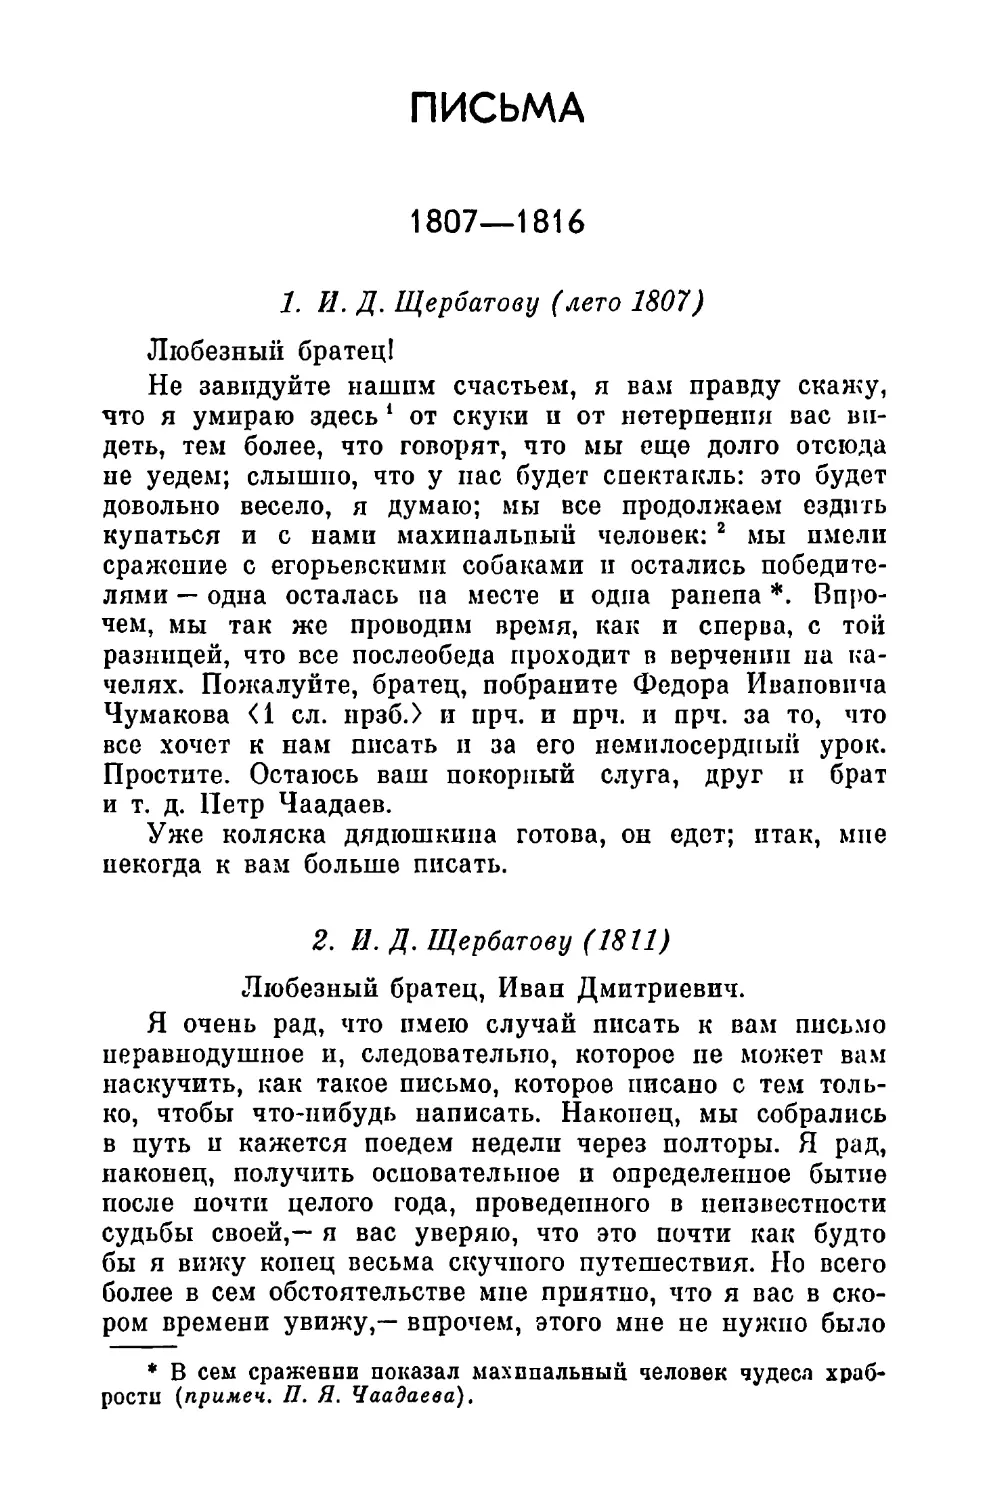 2. Щербатову И.Д. 7.XII.1811